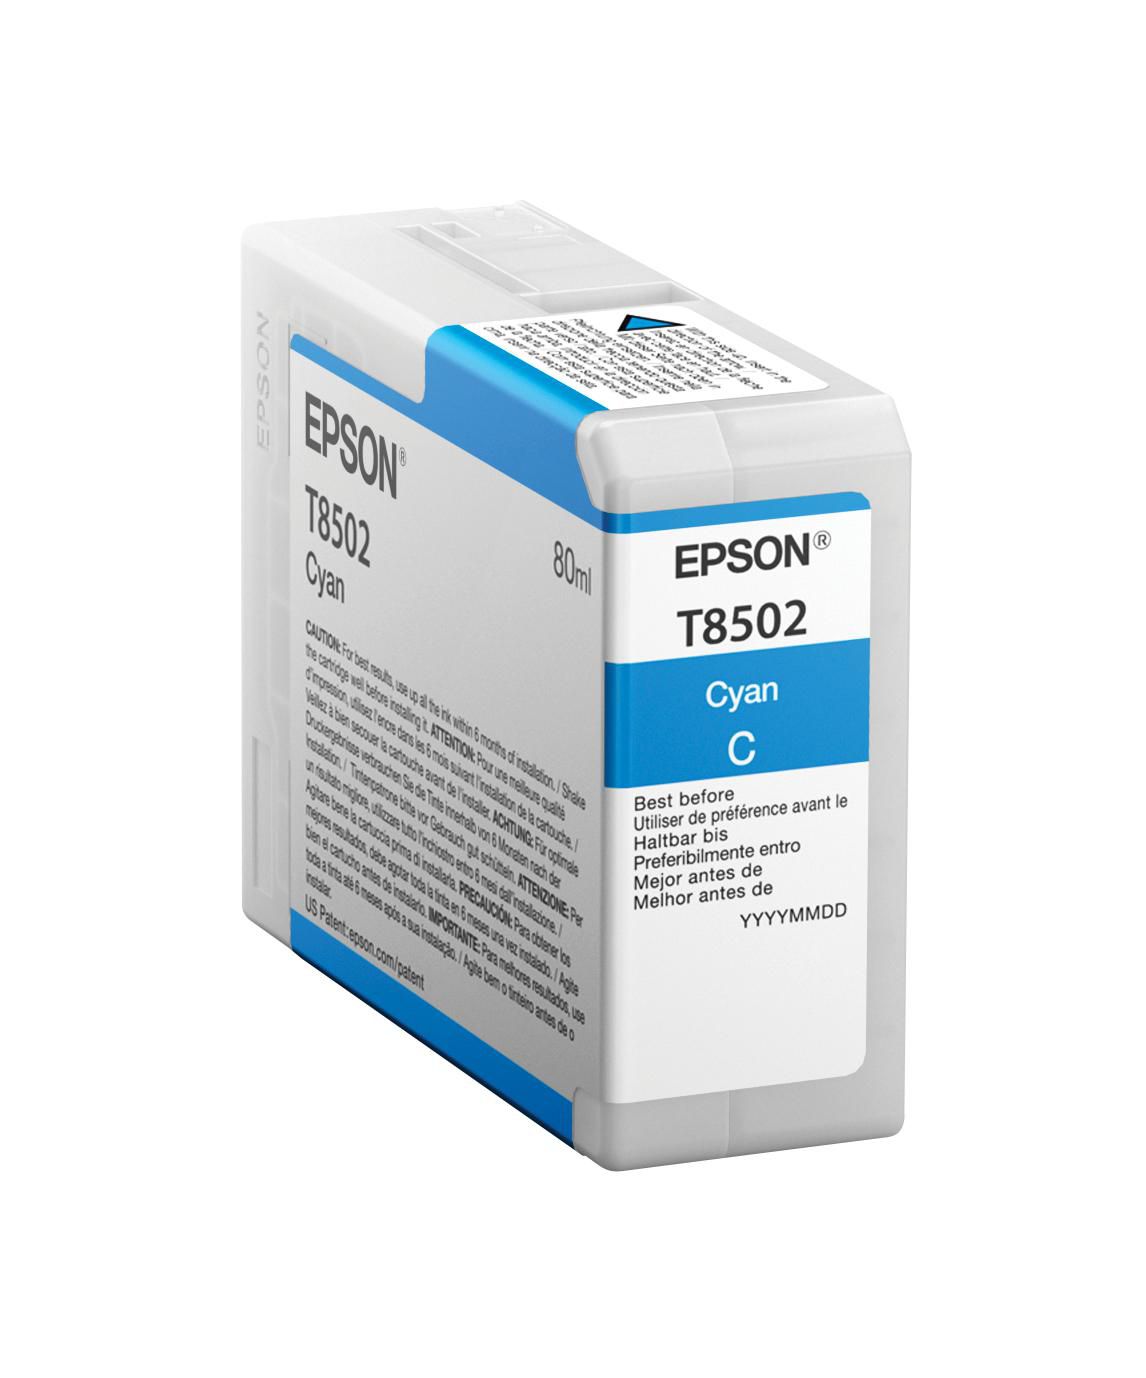 EPSON T850200 Cyan Tintenpatrone